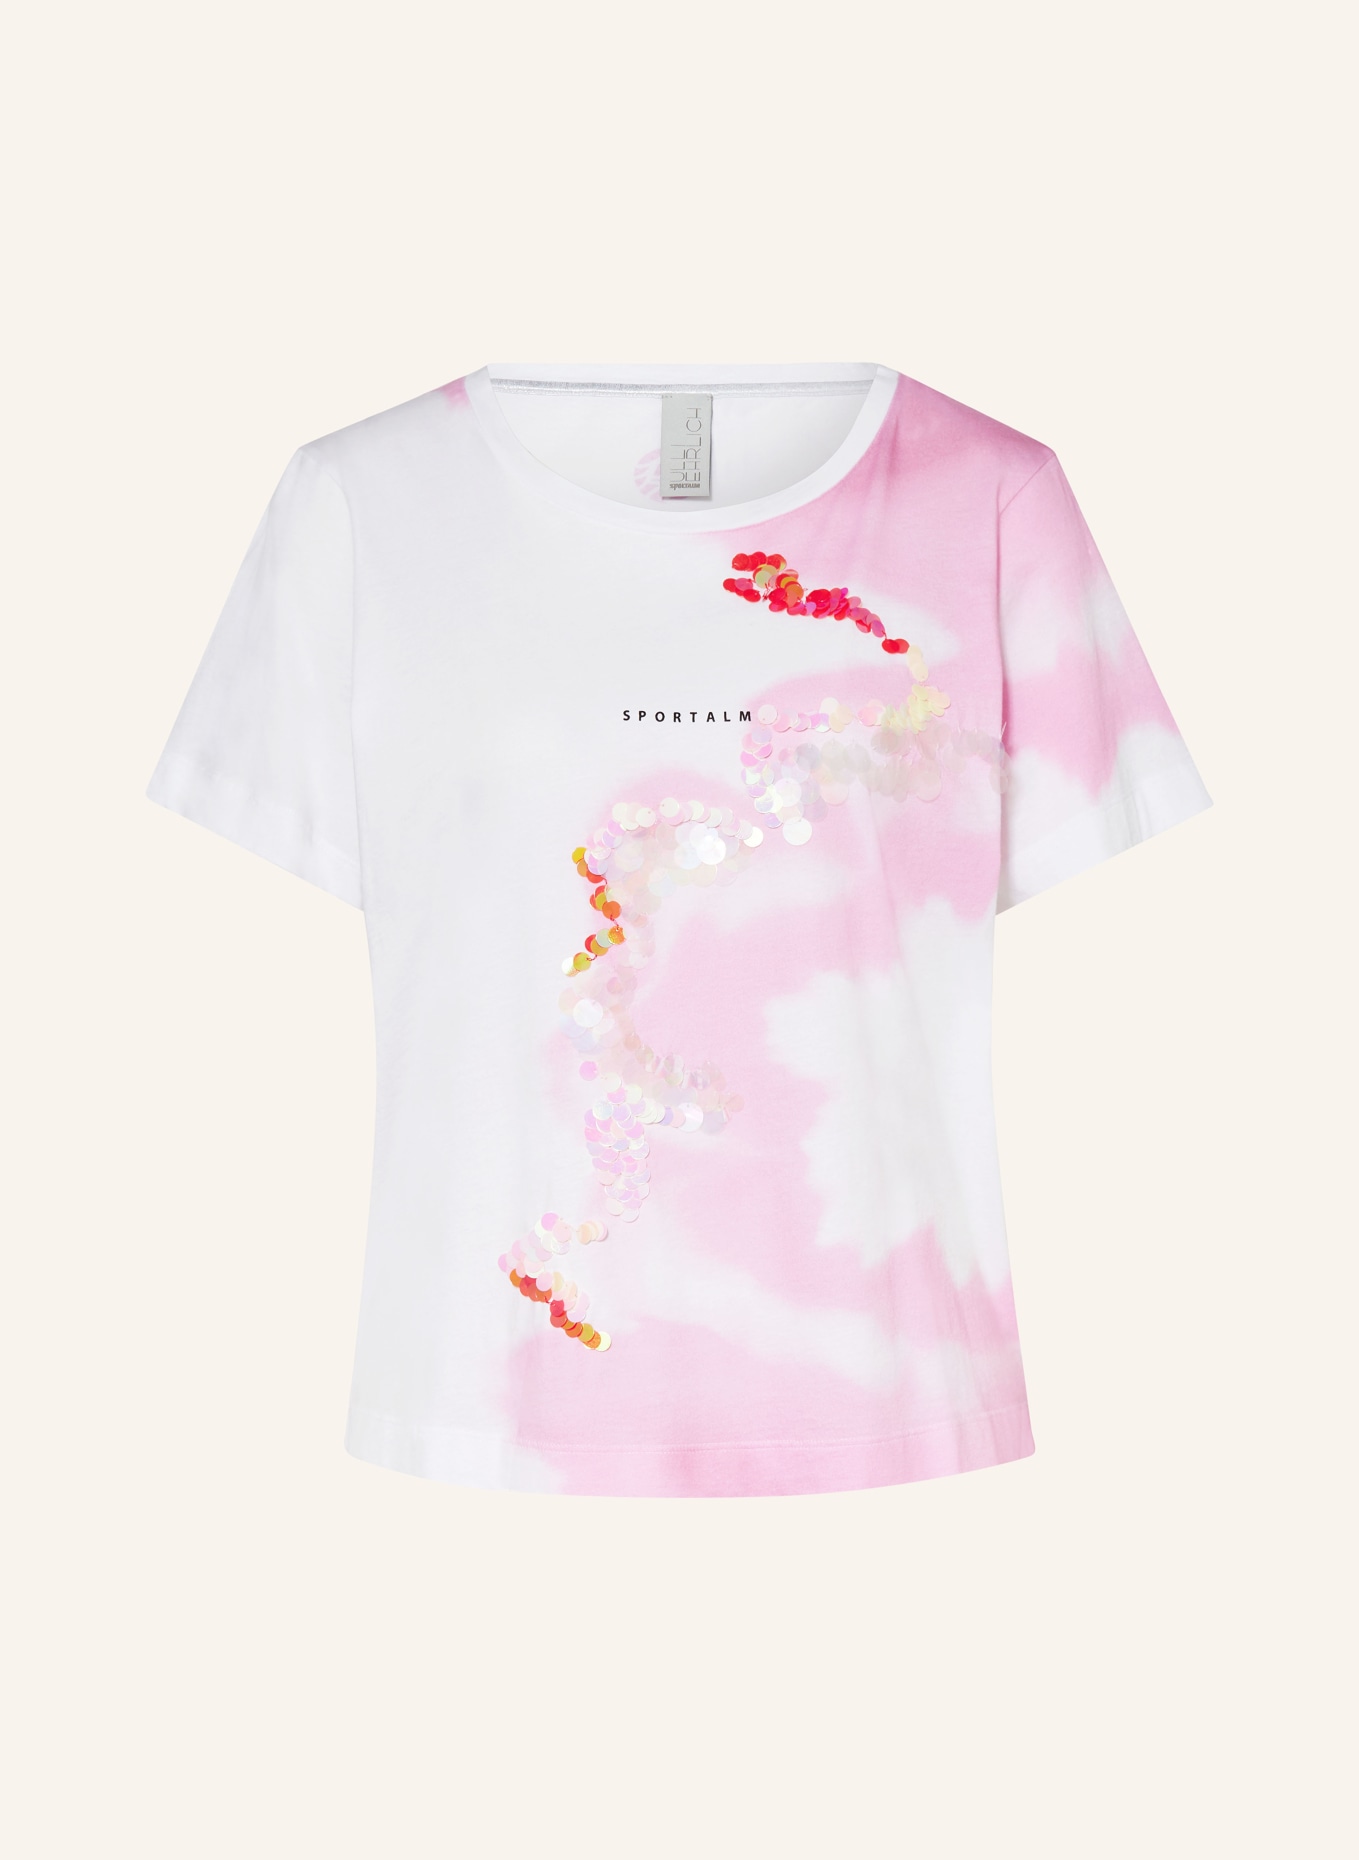 ULLI EHRLICH SPORTALM T-Shirt mit Pailletten, Farbe: WEISS/ PINK (Bild 1)